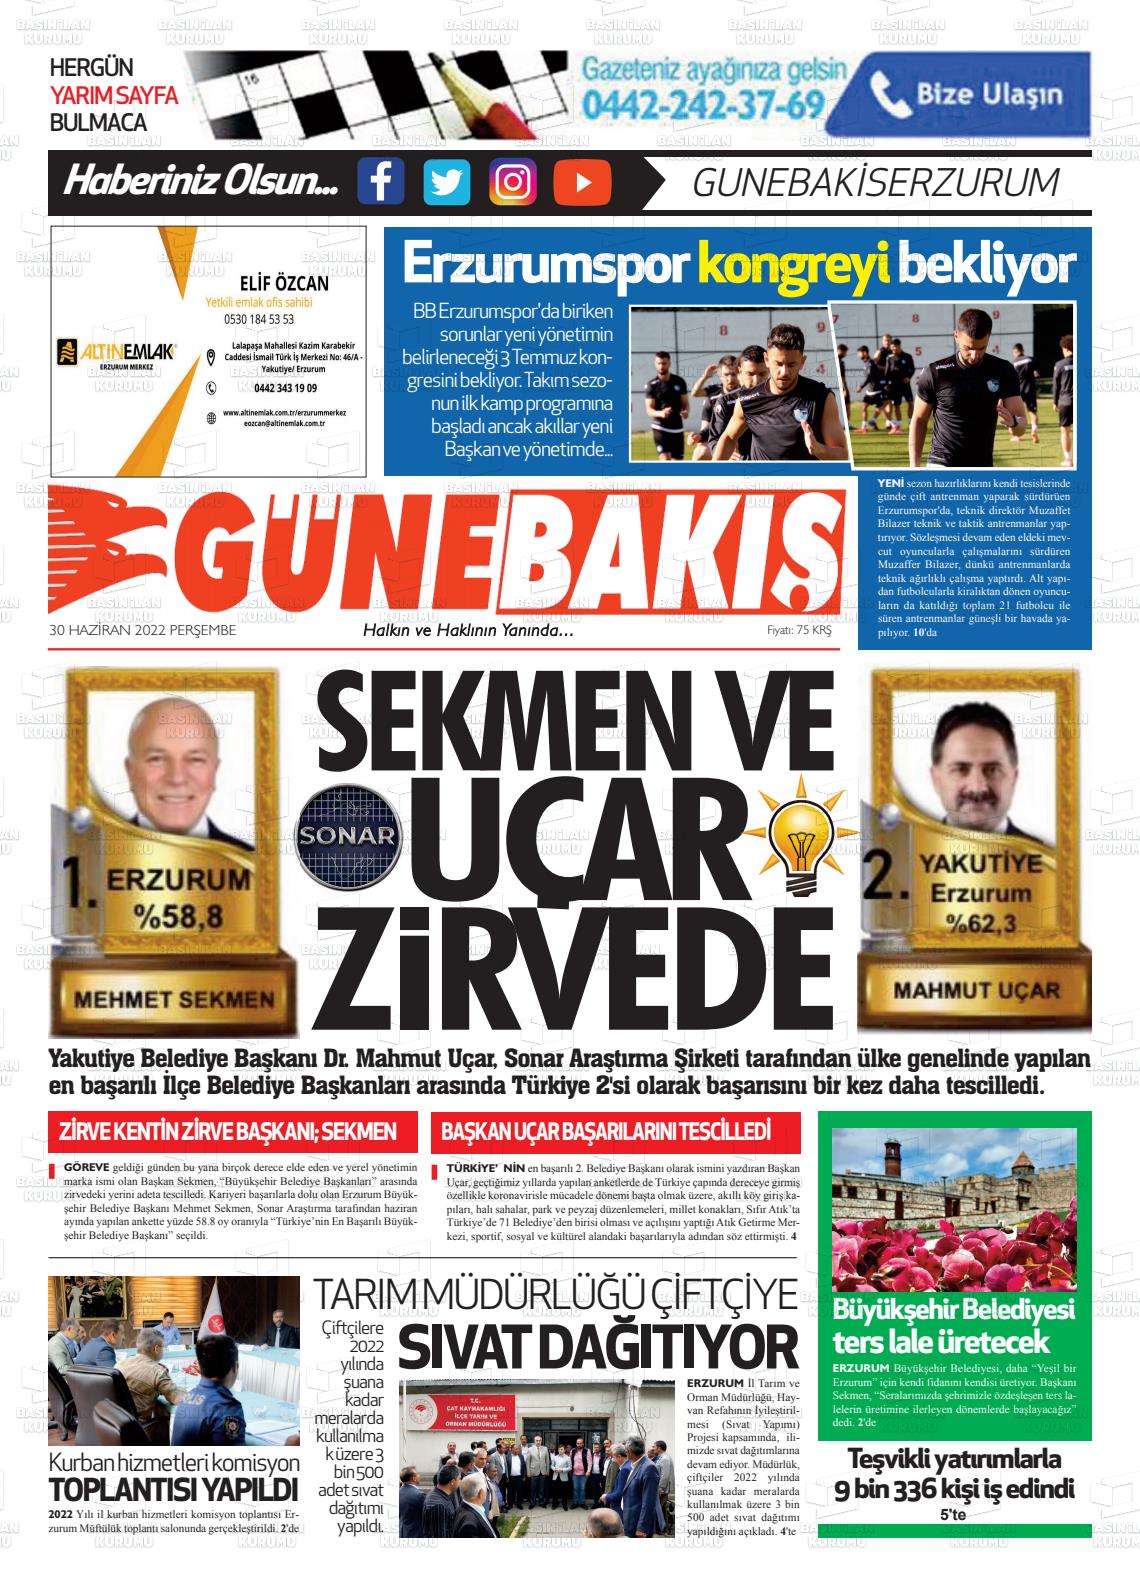 30 Haziran 2022 Erzurum Günebakış Gazete Manşeti